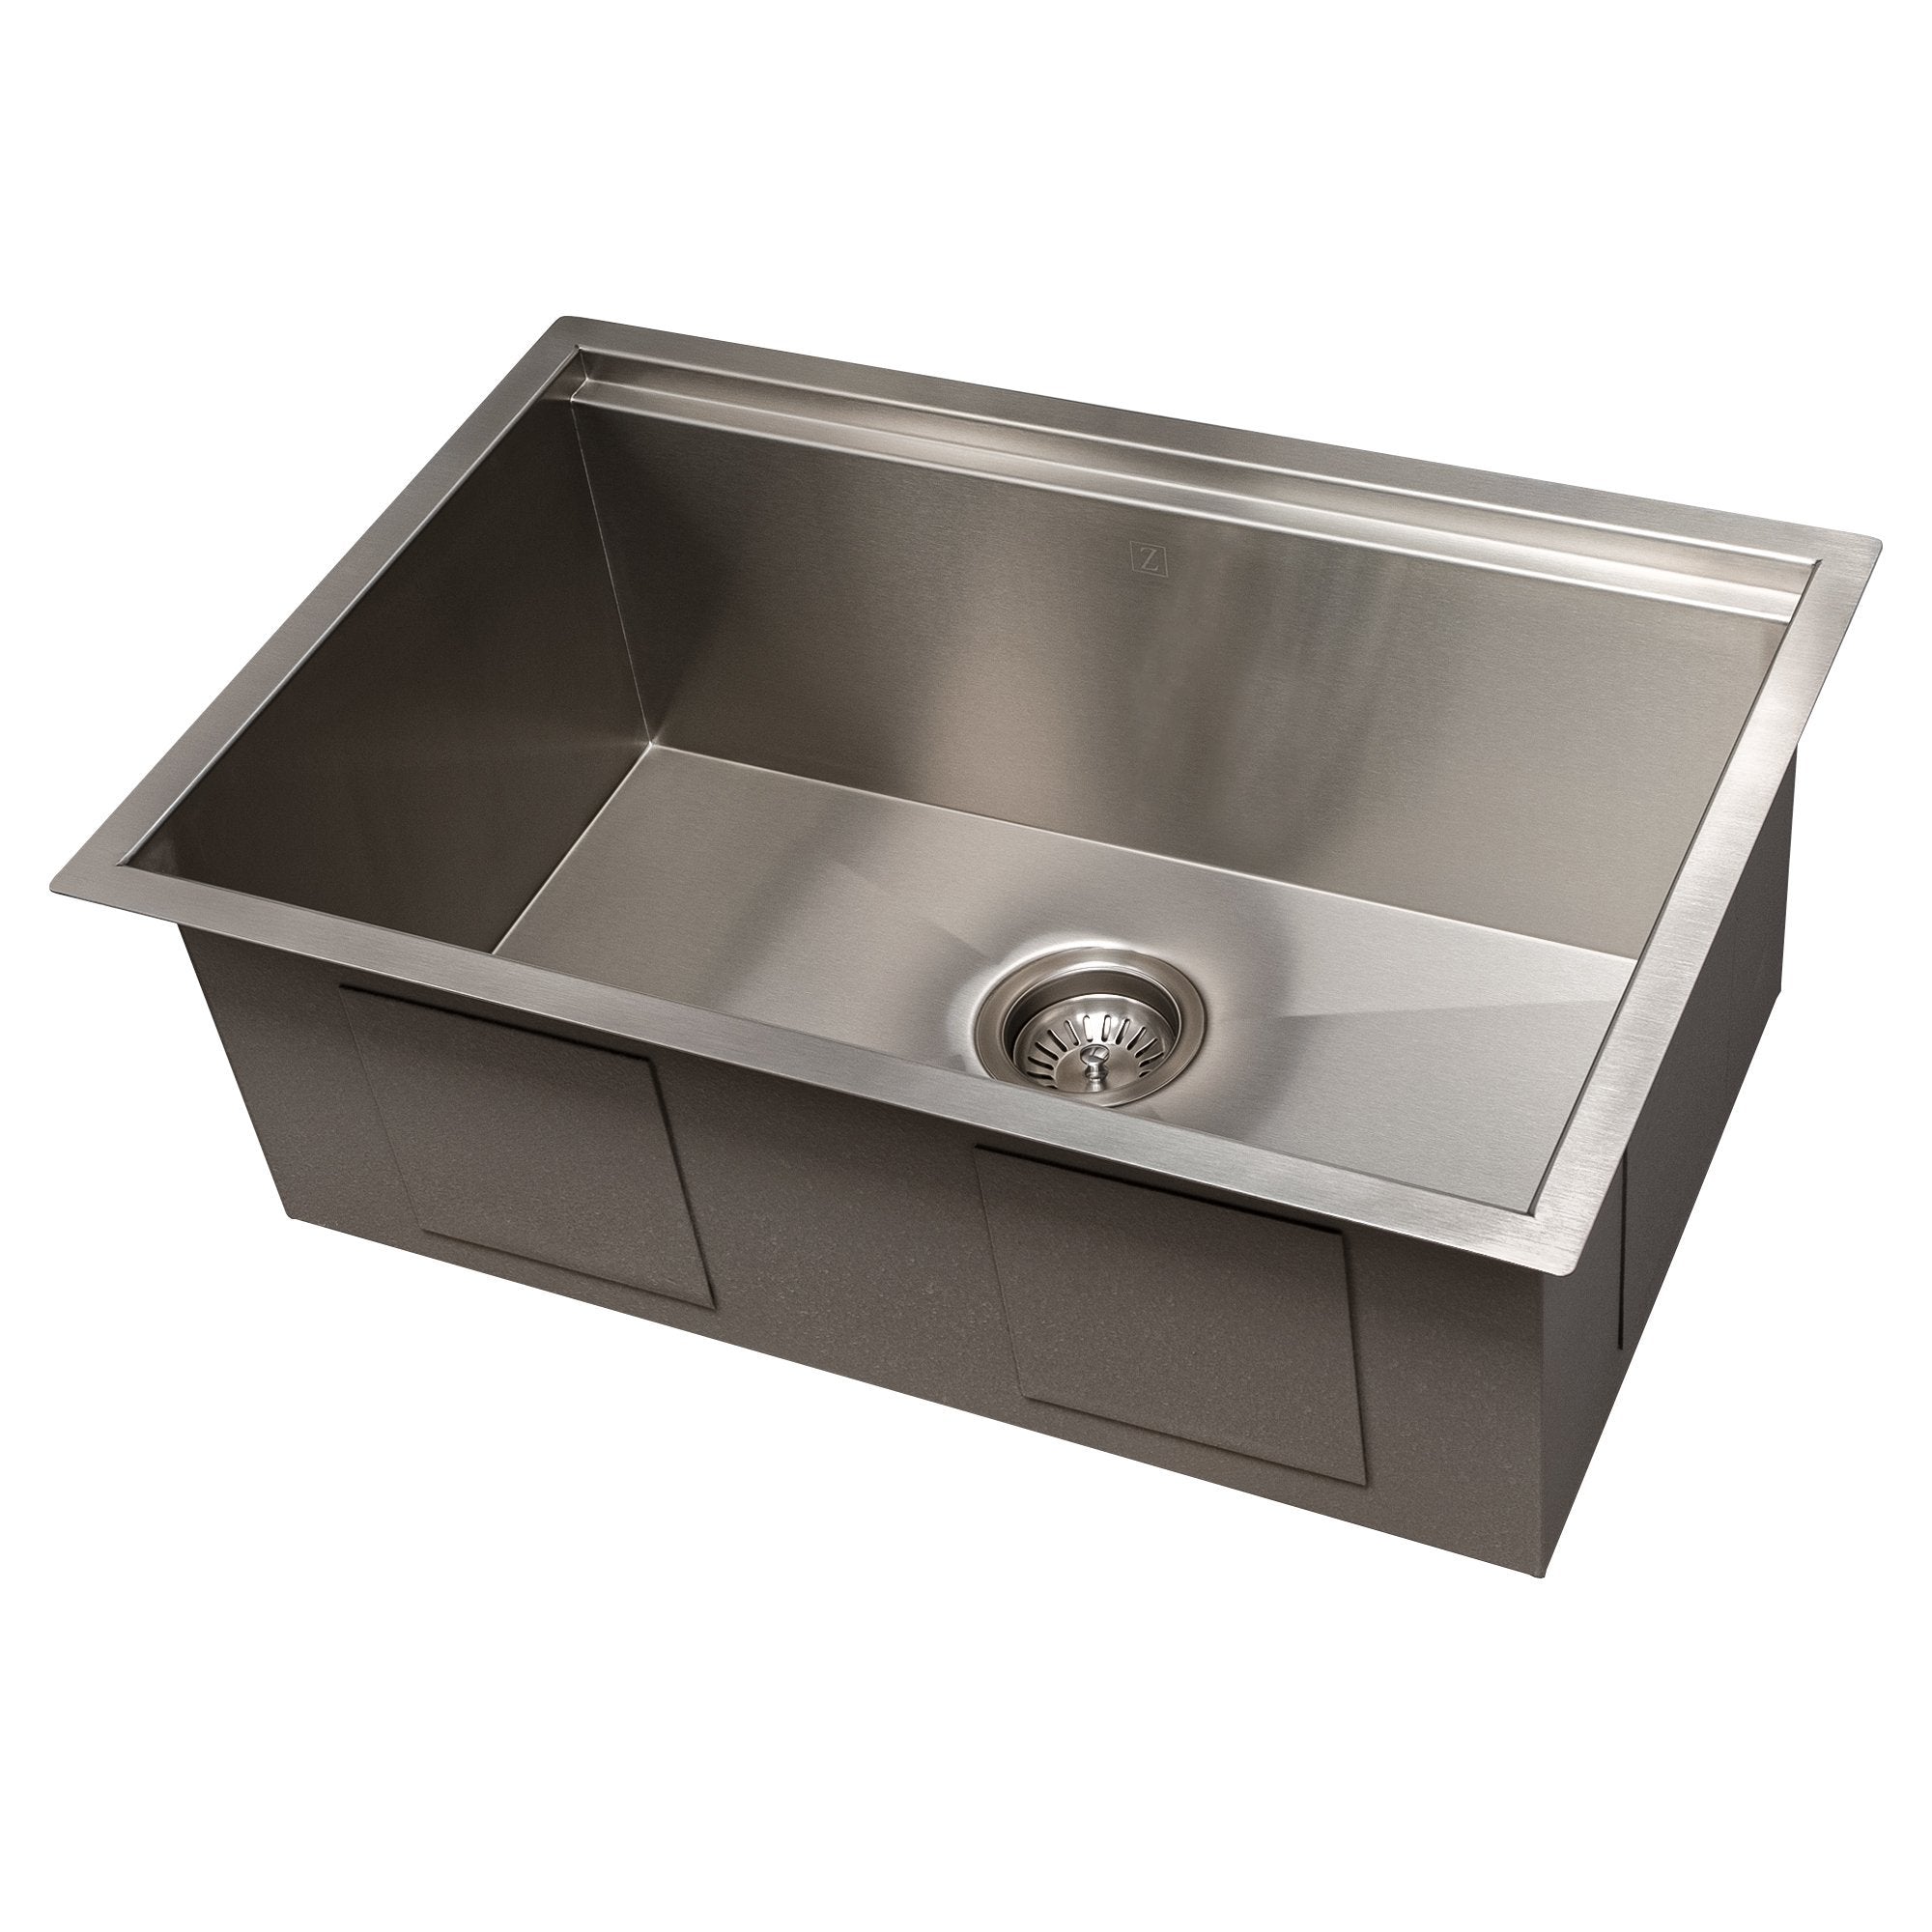 ZLINE Garmisch 27" Undermount Single Bowl Sink with Accessories (SLS) - Rustic Kitchen & Bath - ZLINE Kitchen and Bath